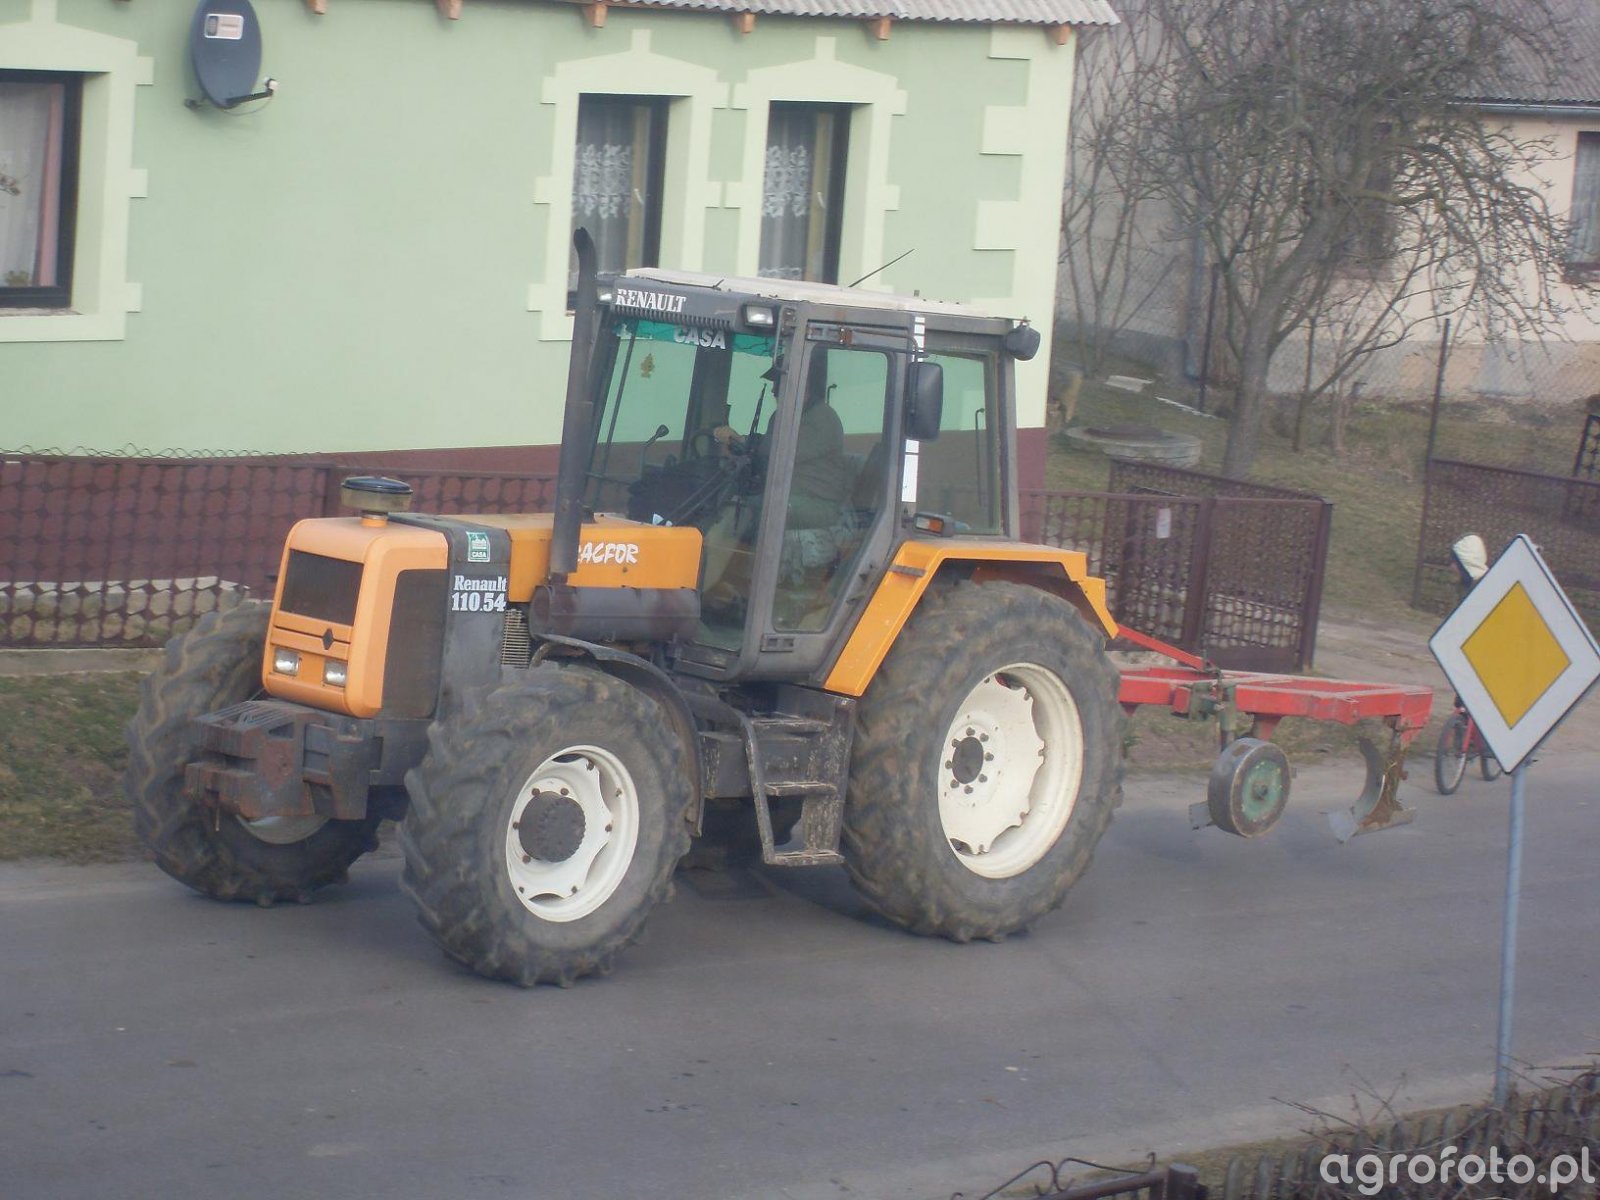 Foto traktor Renault 110.54+Unia Tur 120 488272 Galeria